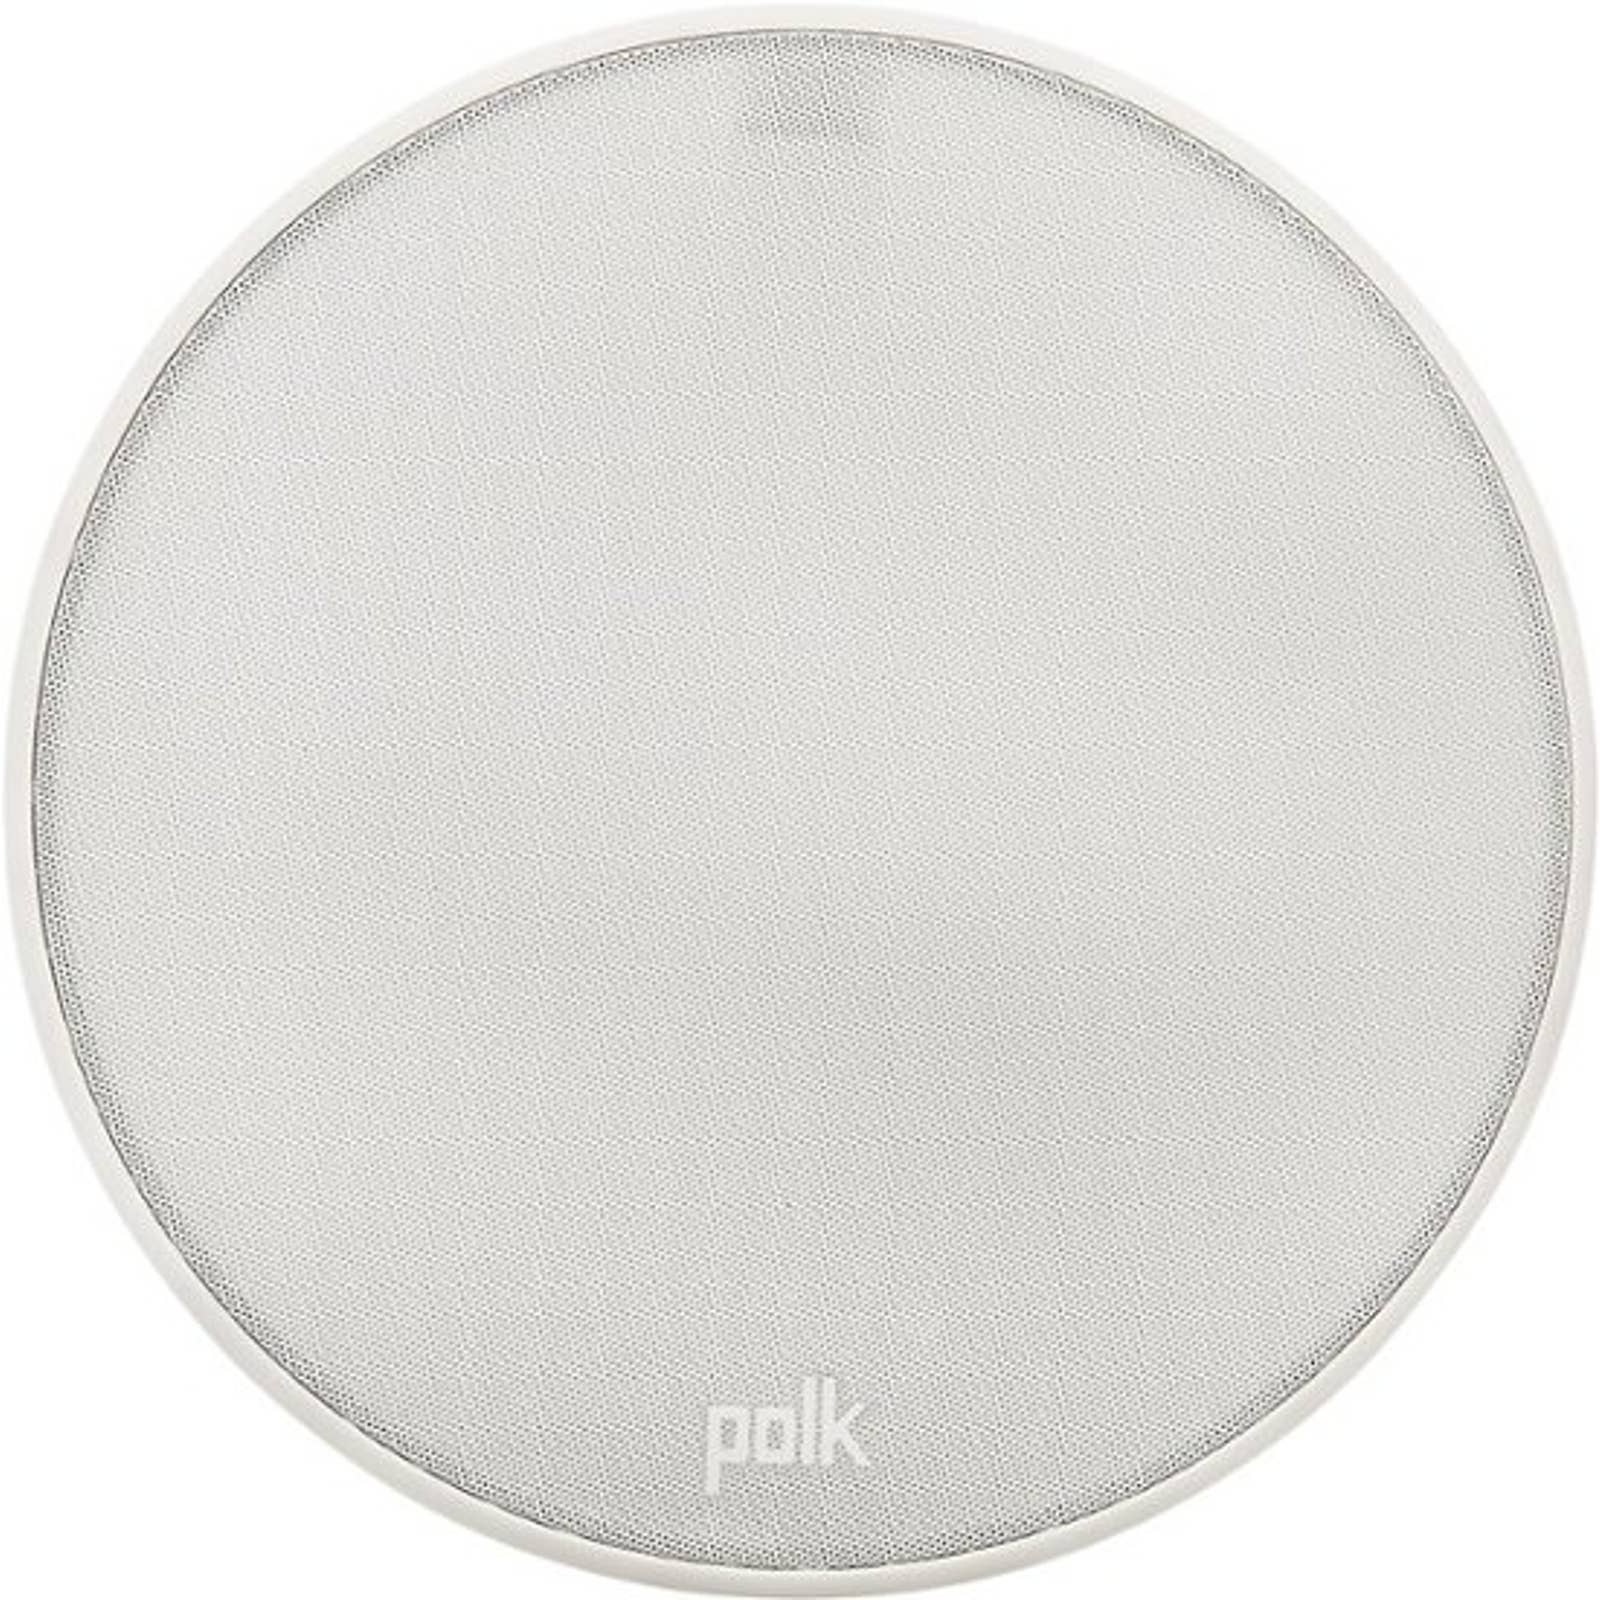 Polk Audio - VT60 6.5" 2-Way In-Ceiling Speaker (Each) - White